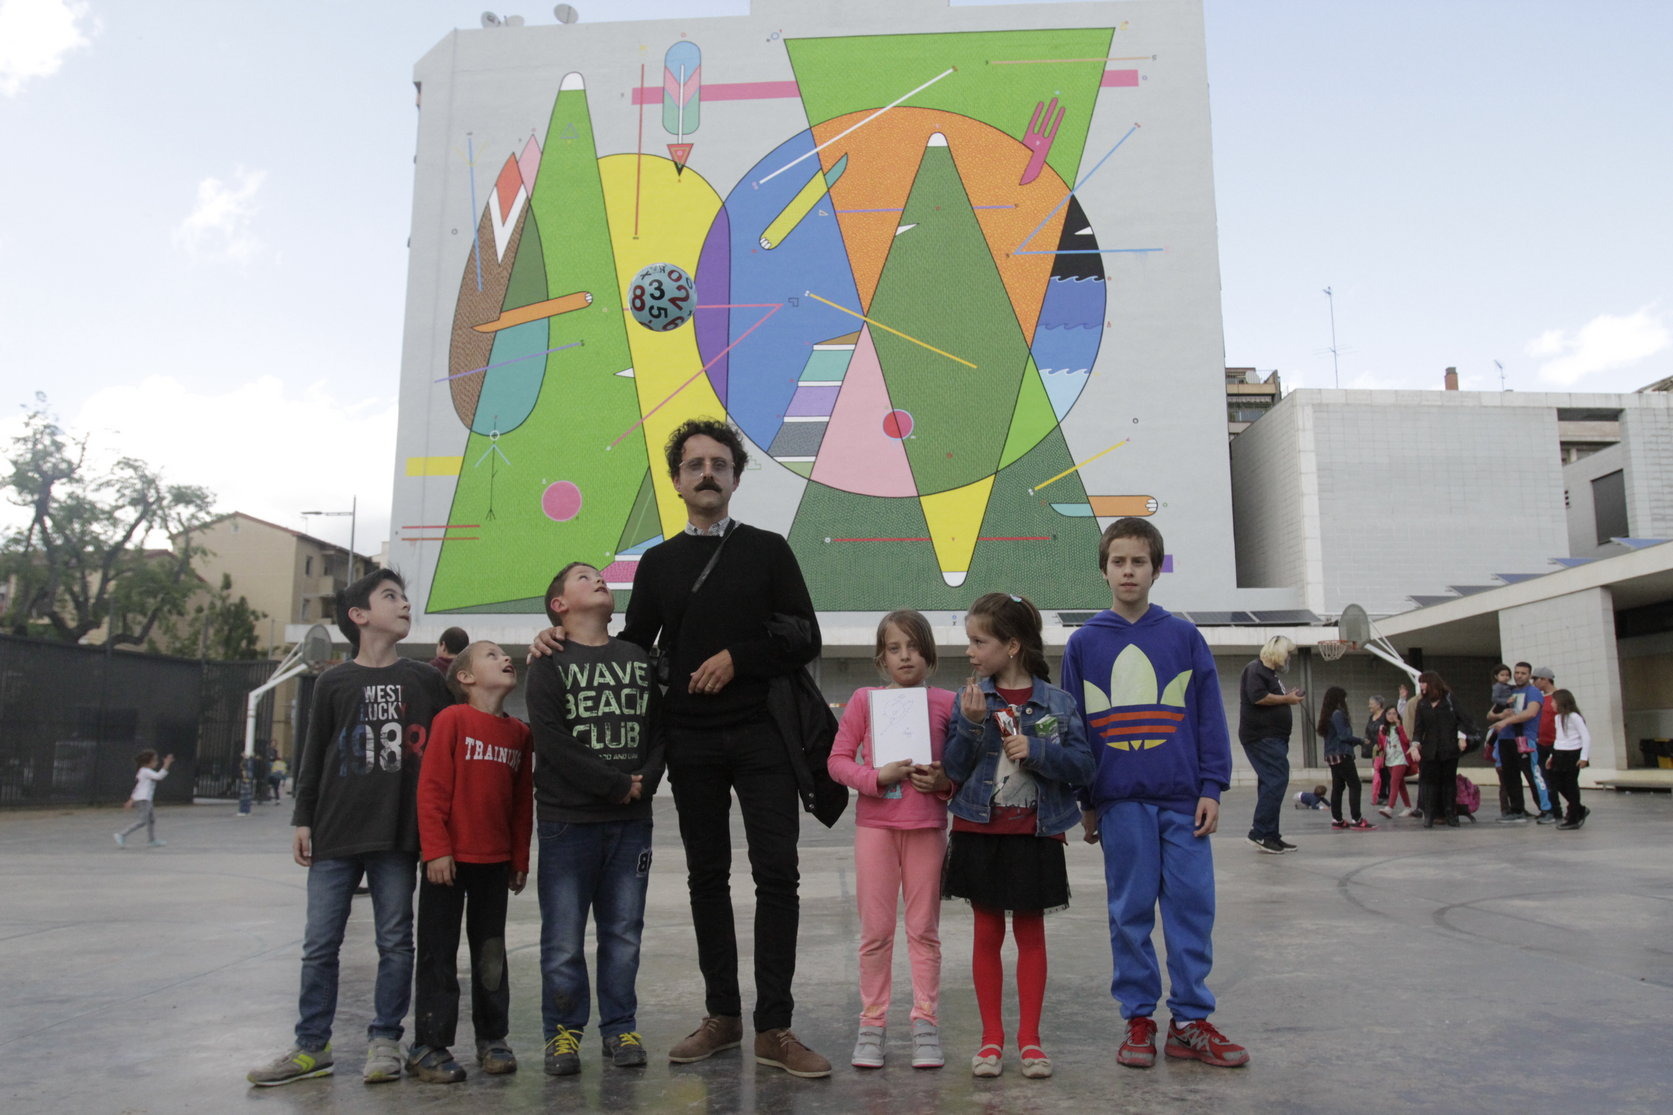 L'artista Sixe Paredes amb alguns dels alumnes de l'escola davant el mural